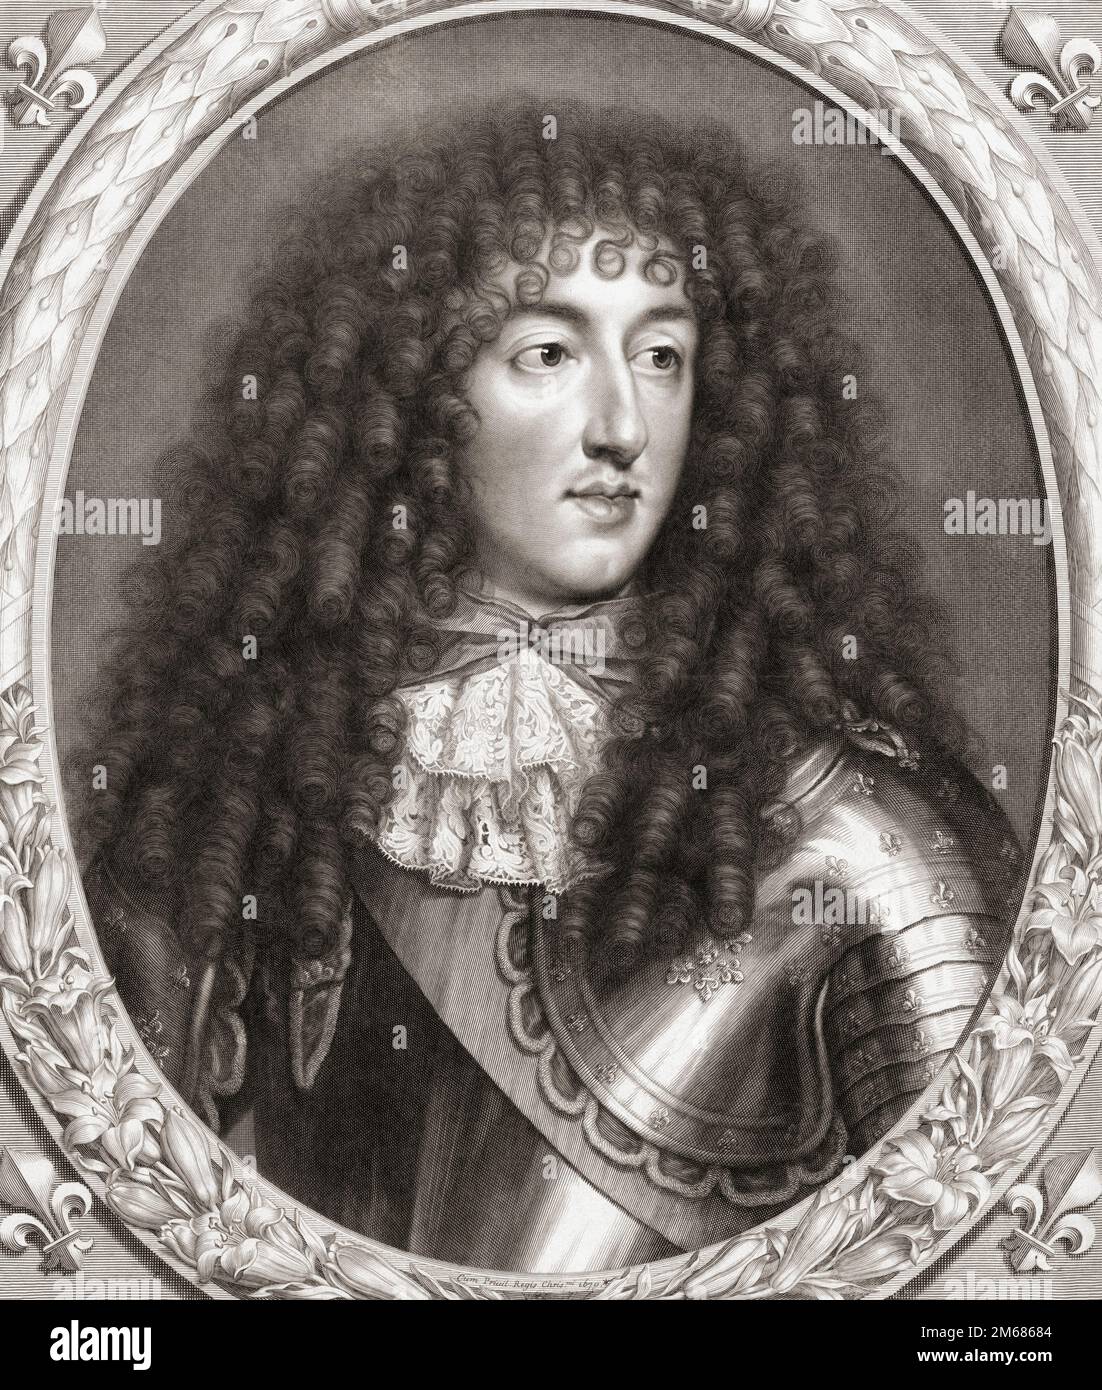 Monsieur Philippe I, duc d'Orléans, 1640 – 1701. Le plus jeune fils du roi Louis XIII D'un imprimé de Pieter van Schuppen après le tableau de Charles le Brun. Banque D'Images